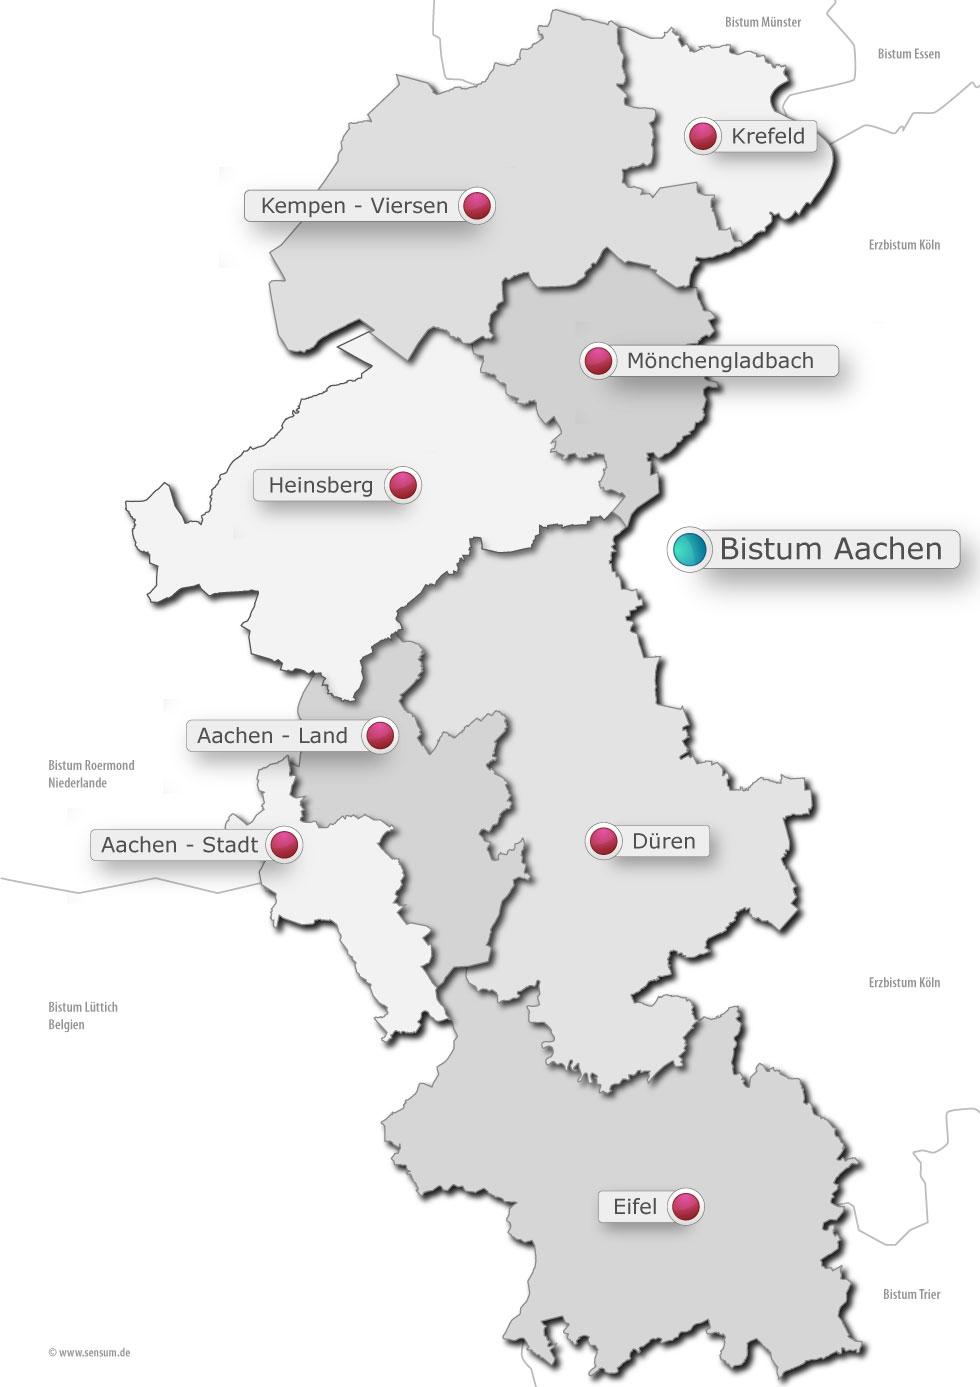 Bistumskarte - Regionen